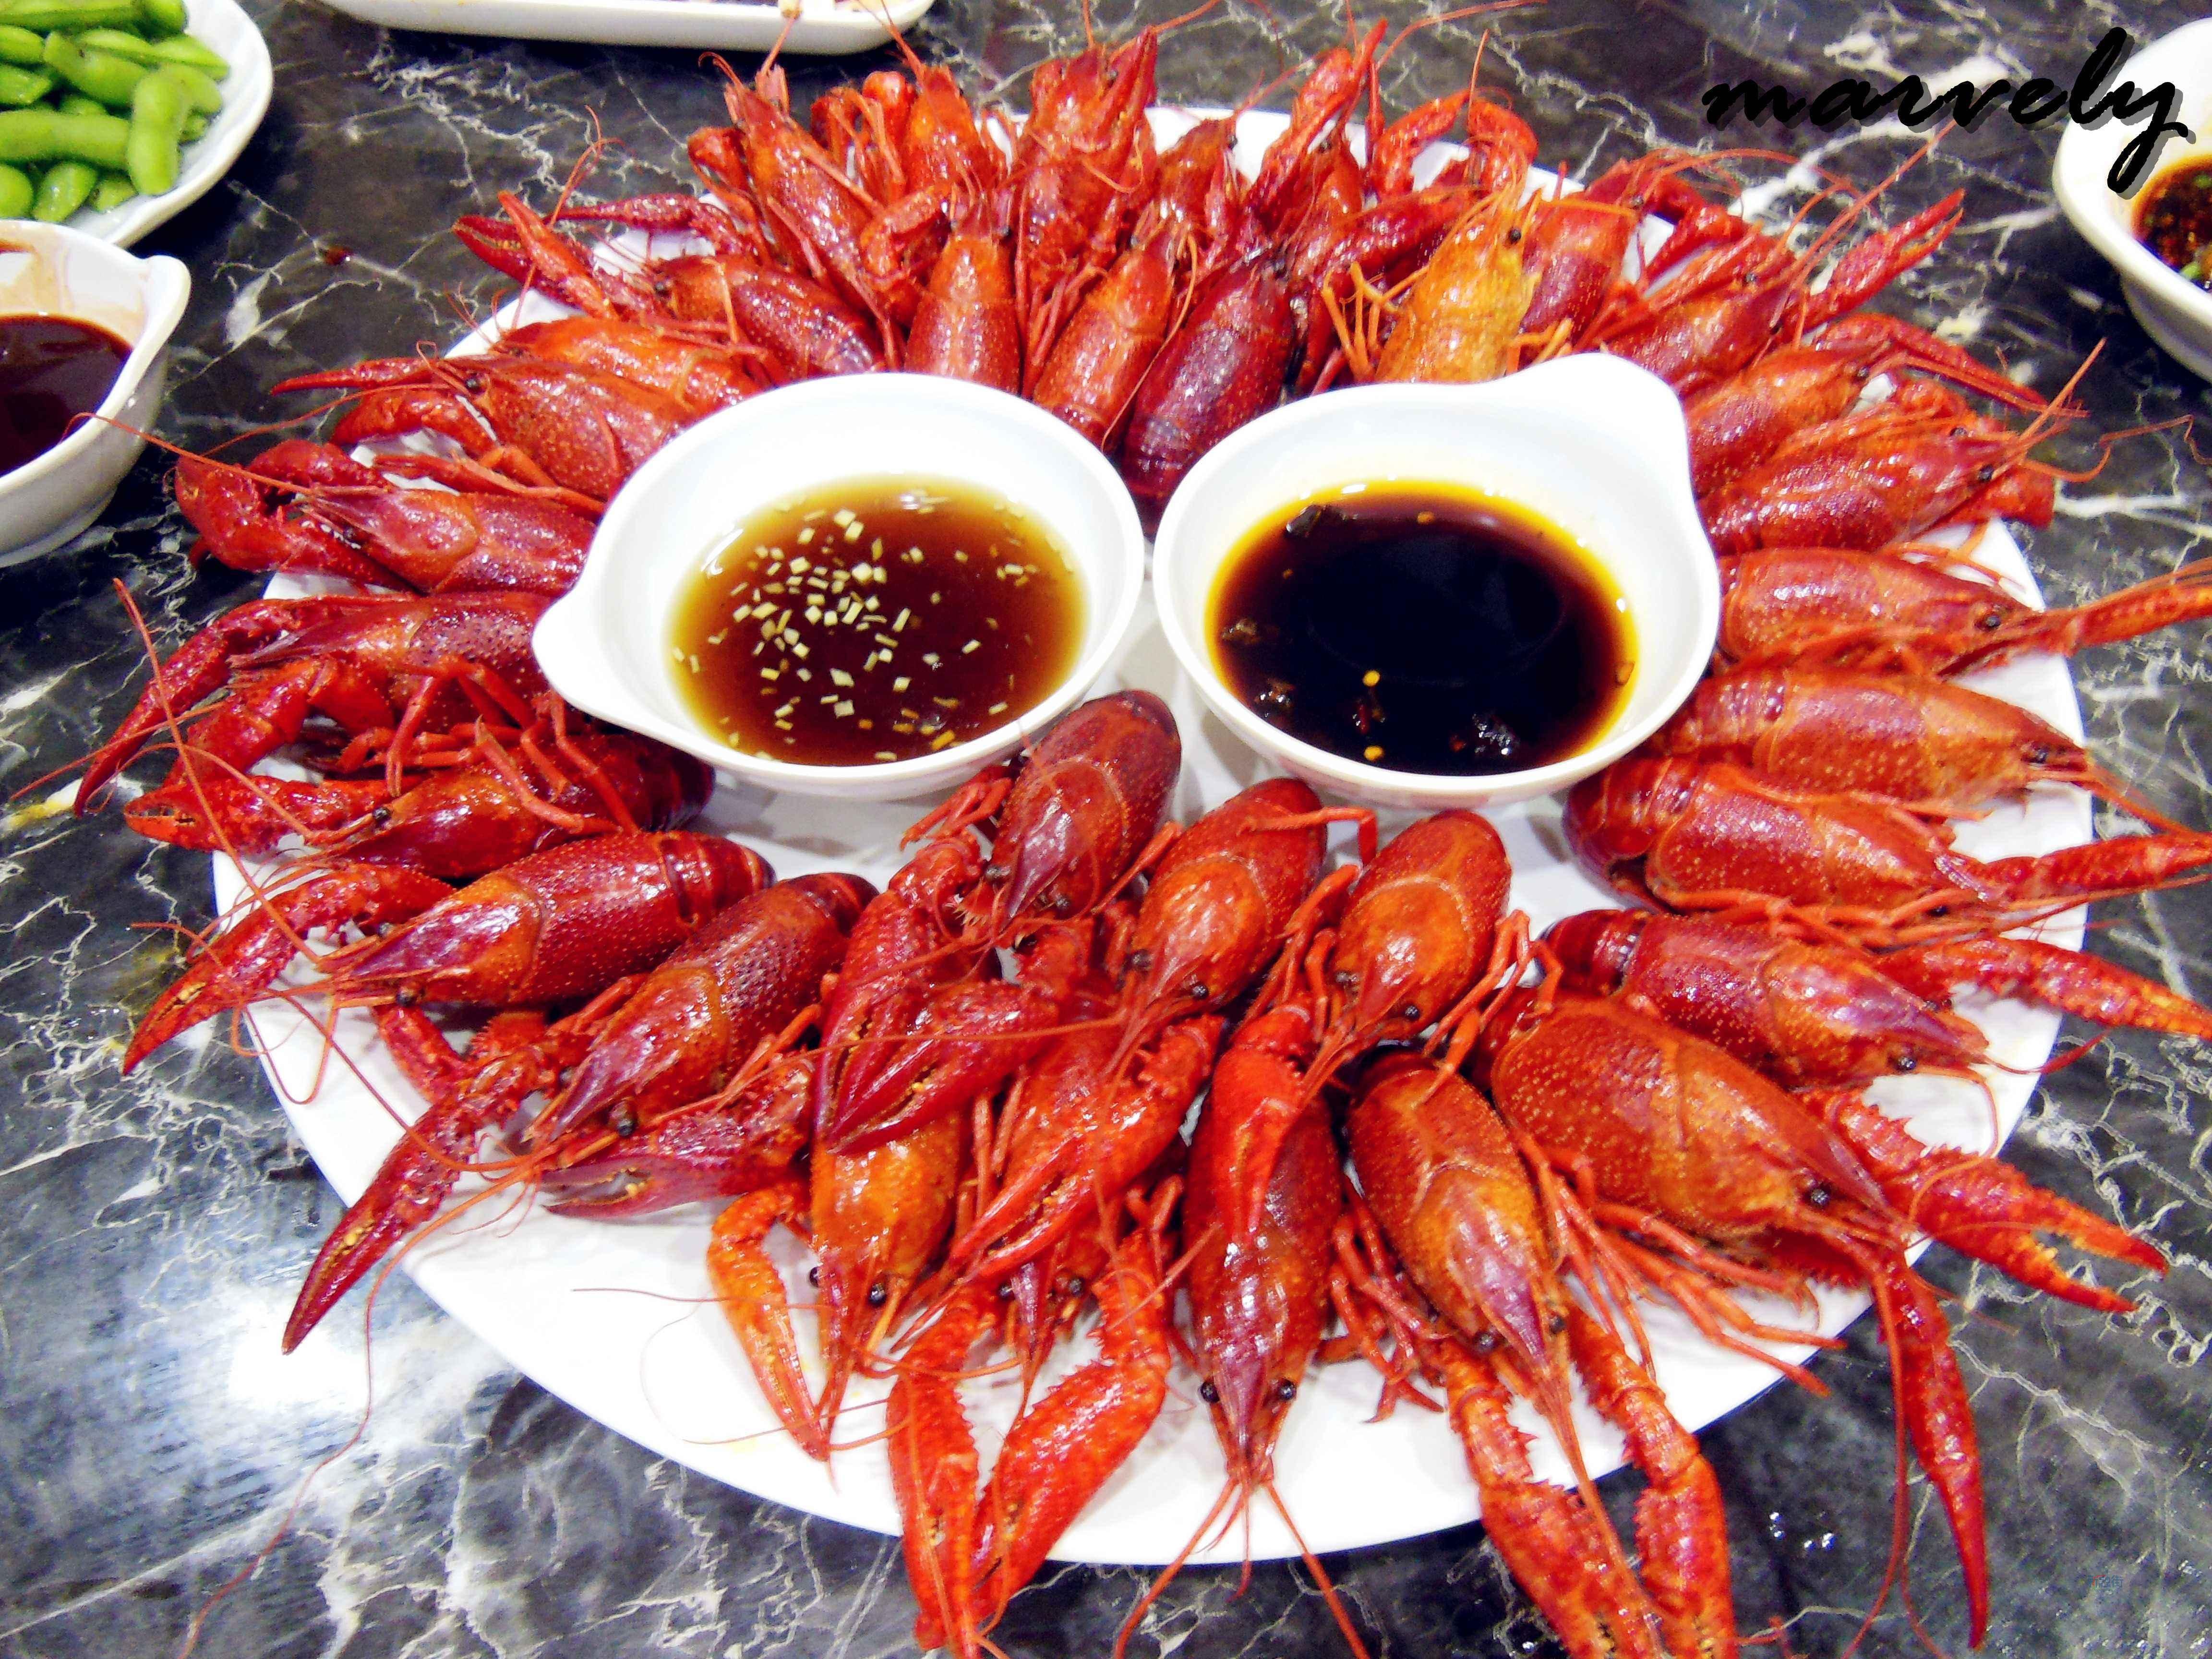 假如小龙虾灭绝 中国人吃什么?多少人生无可恋?